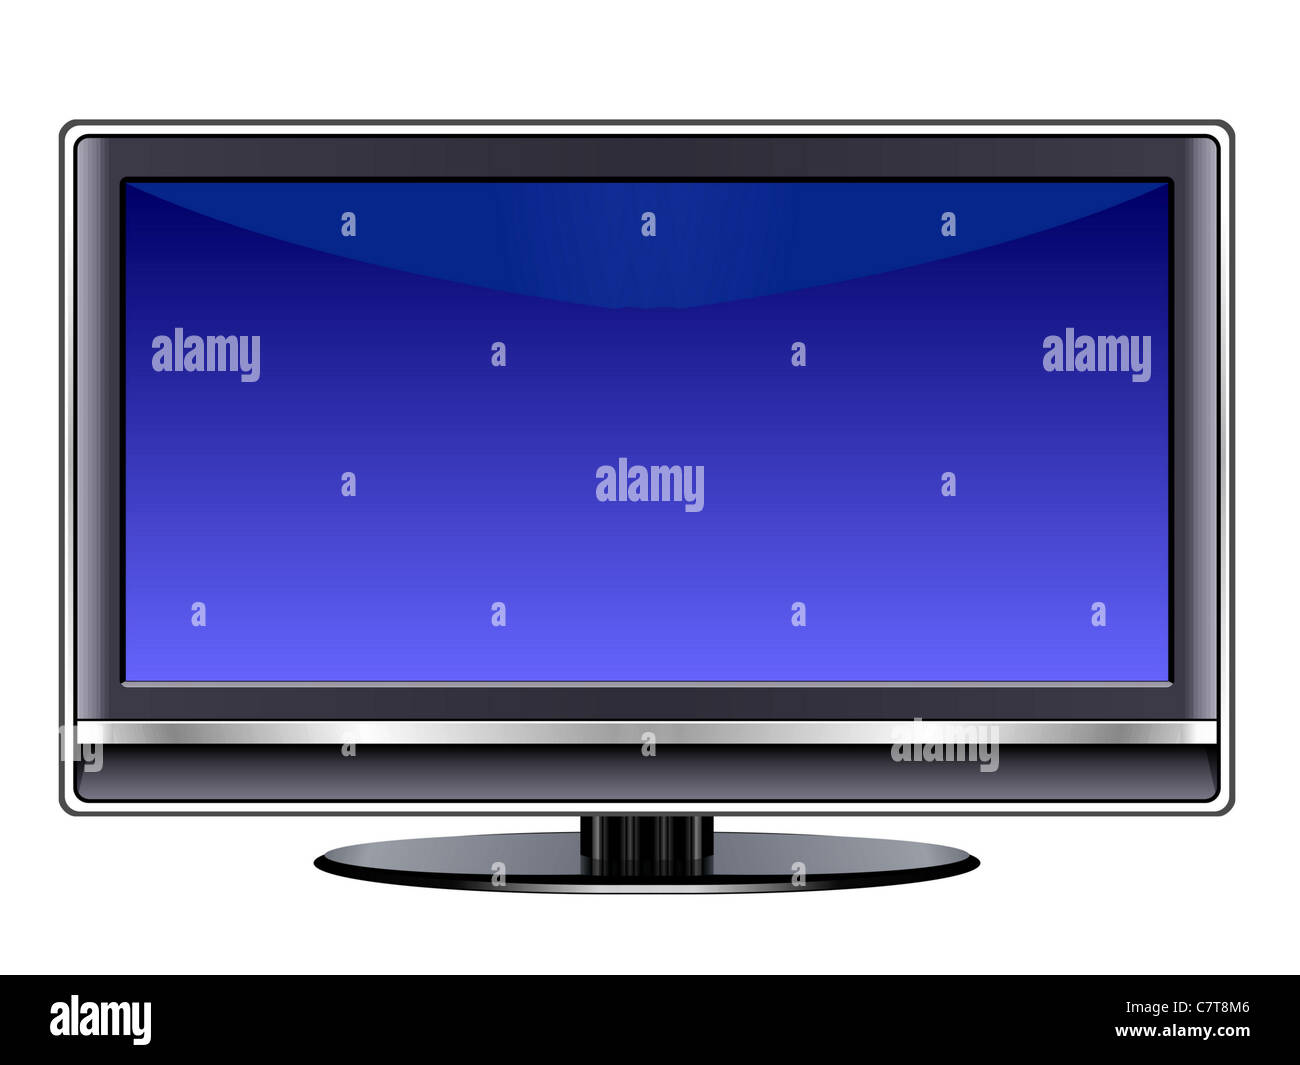 Televisión de Plasma monitor LCD plana de plata aislado sobre fondo blanco. Foto de stock